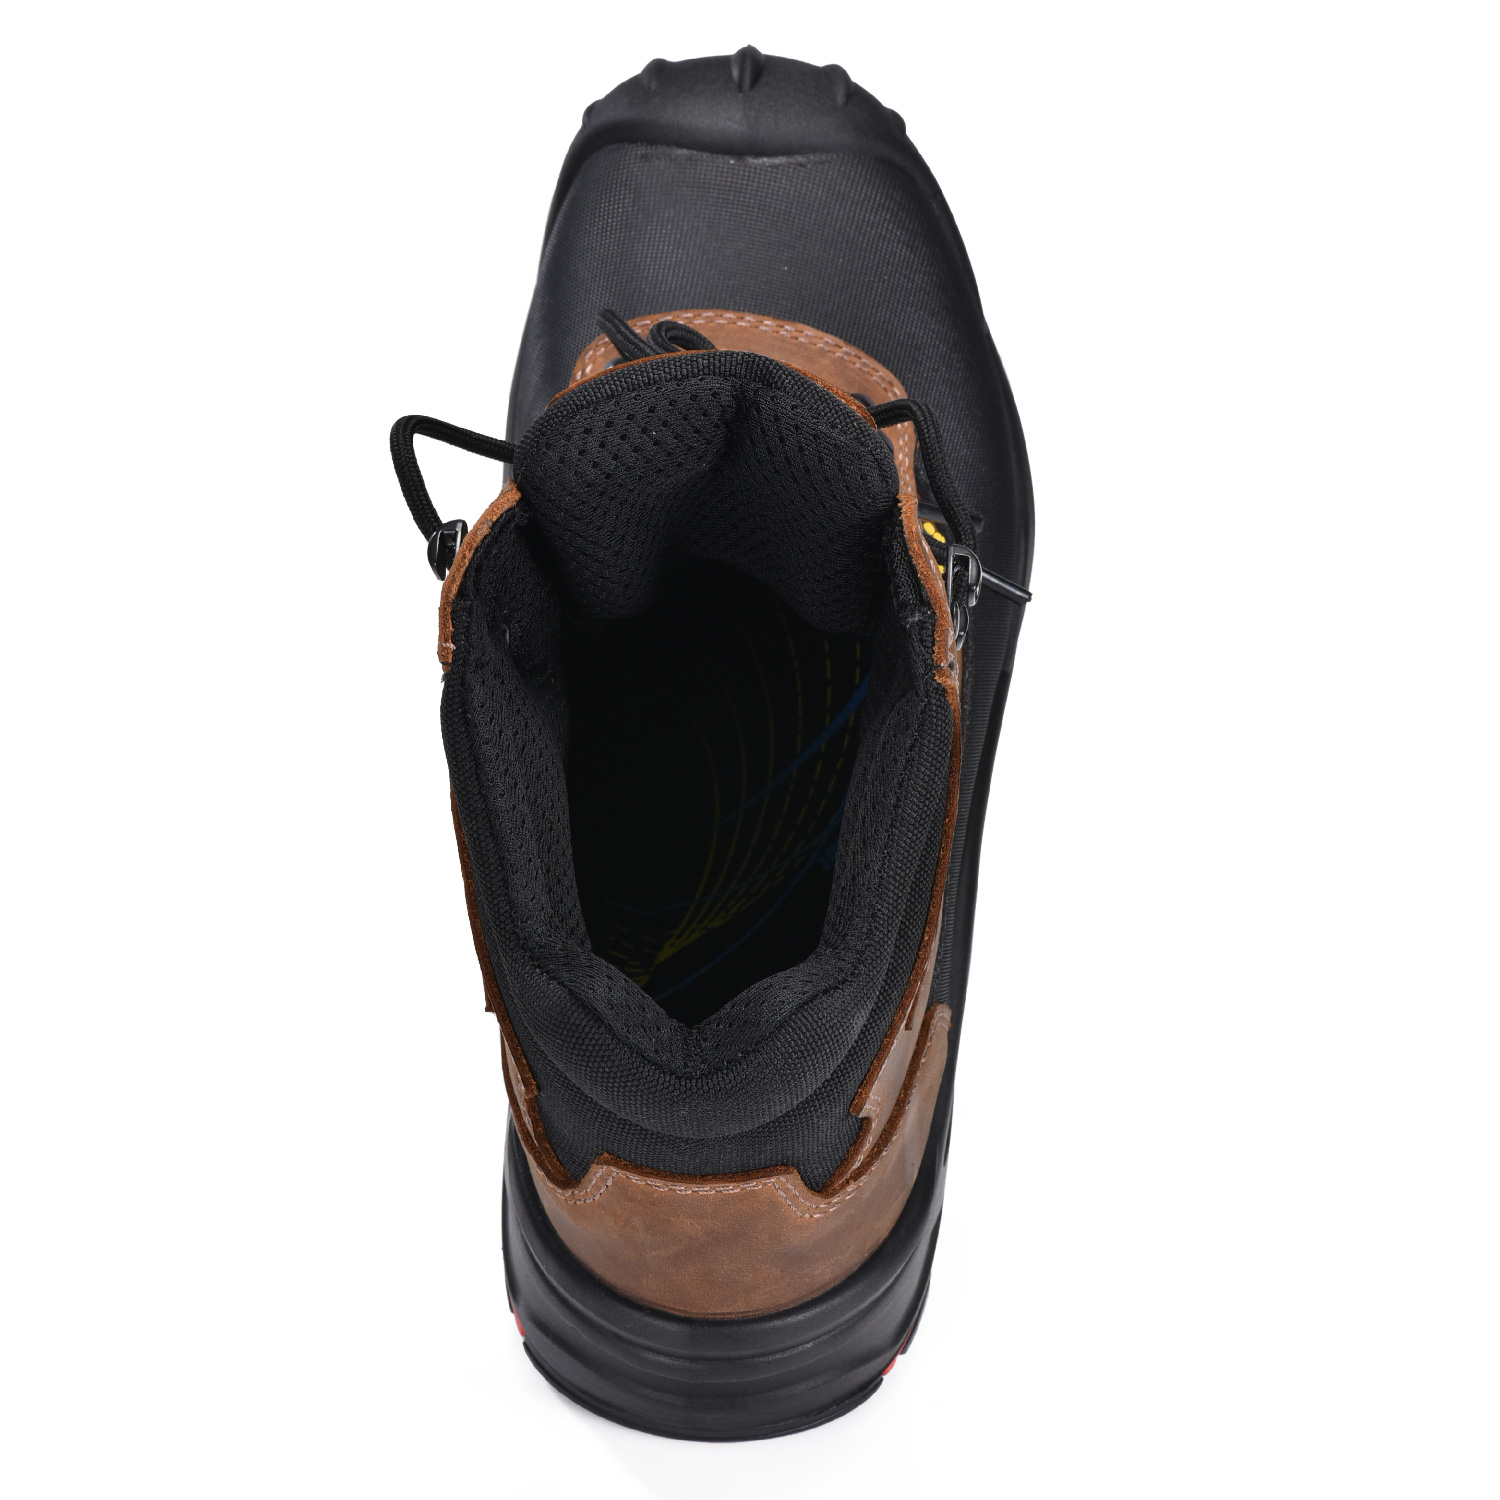 Самые удобные нескользящие защитные ботинки из нубука с композитным носком для мужчин M-8563